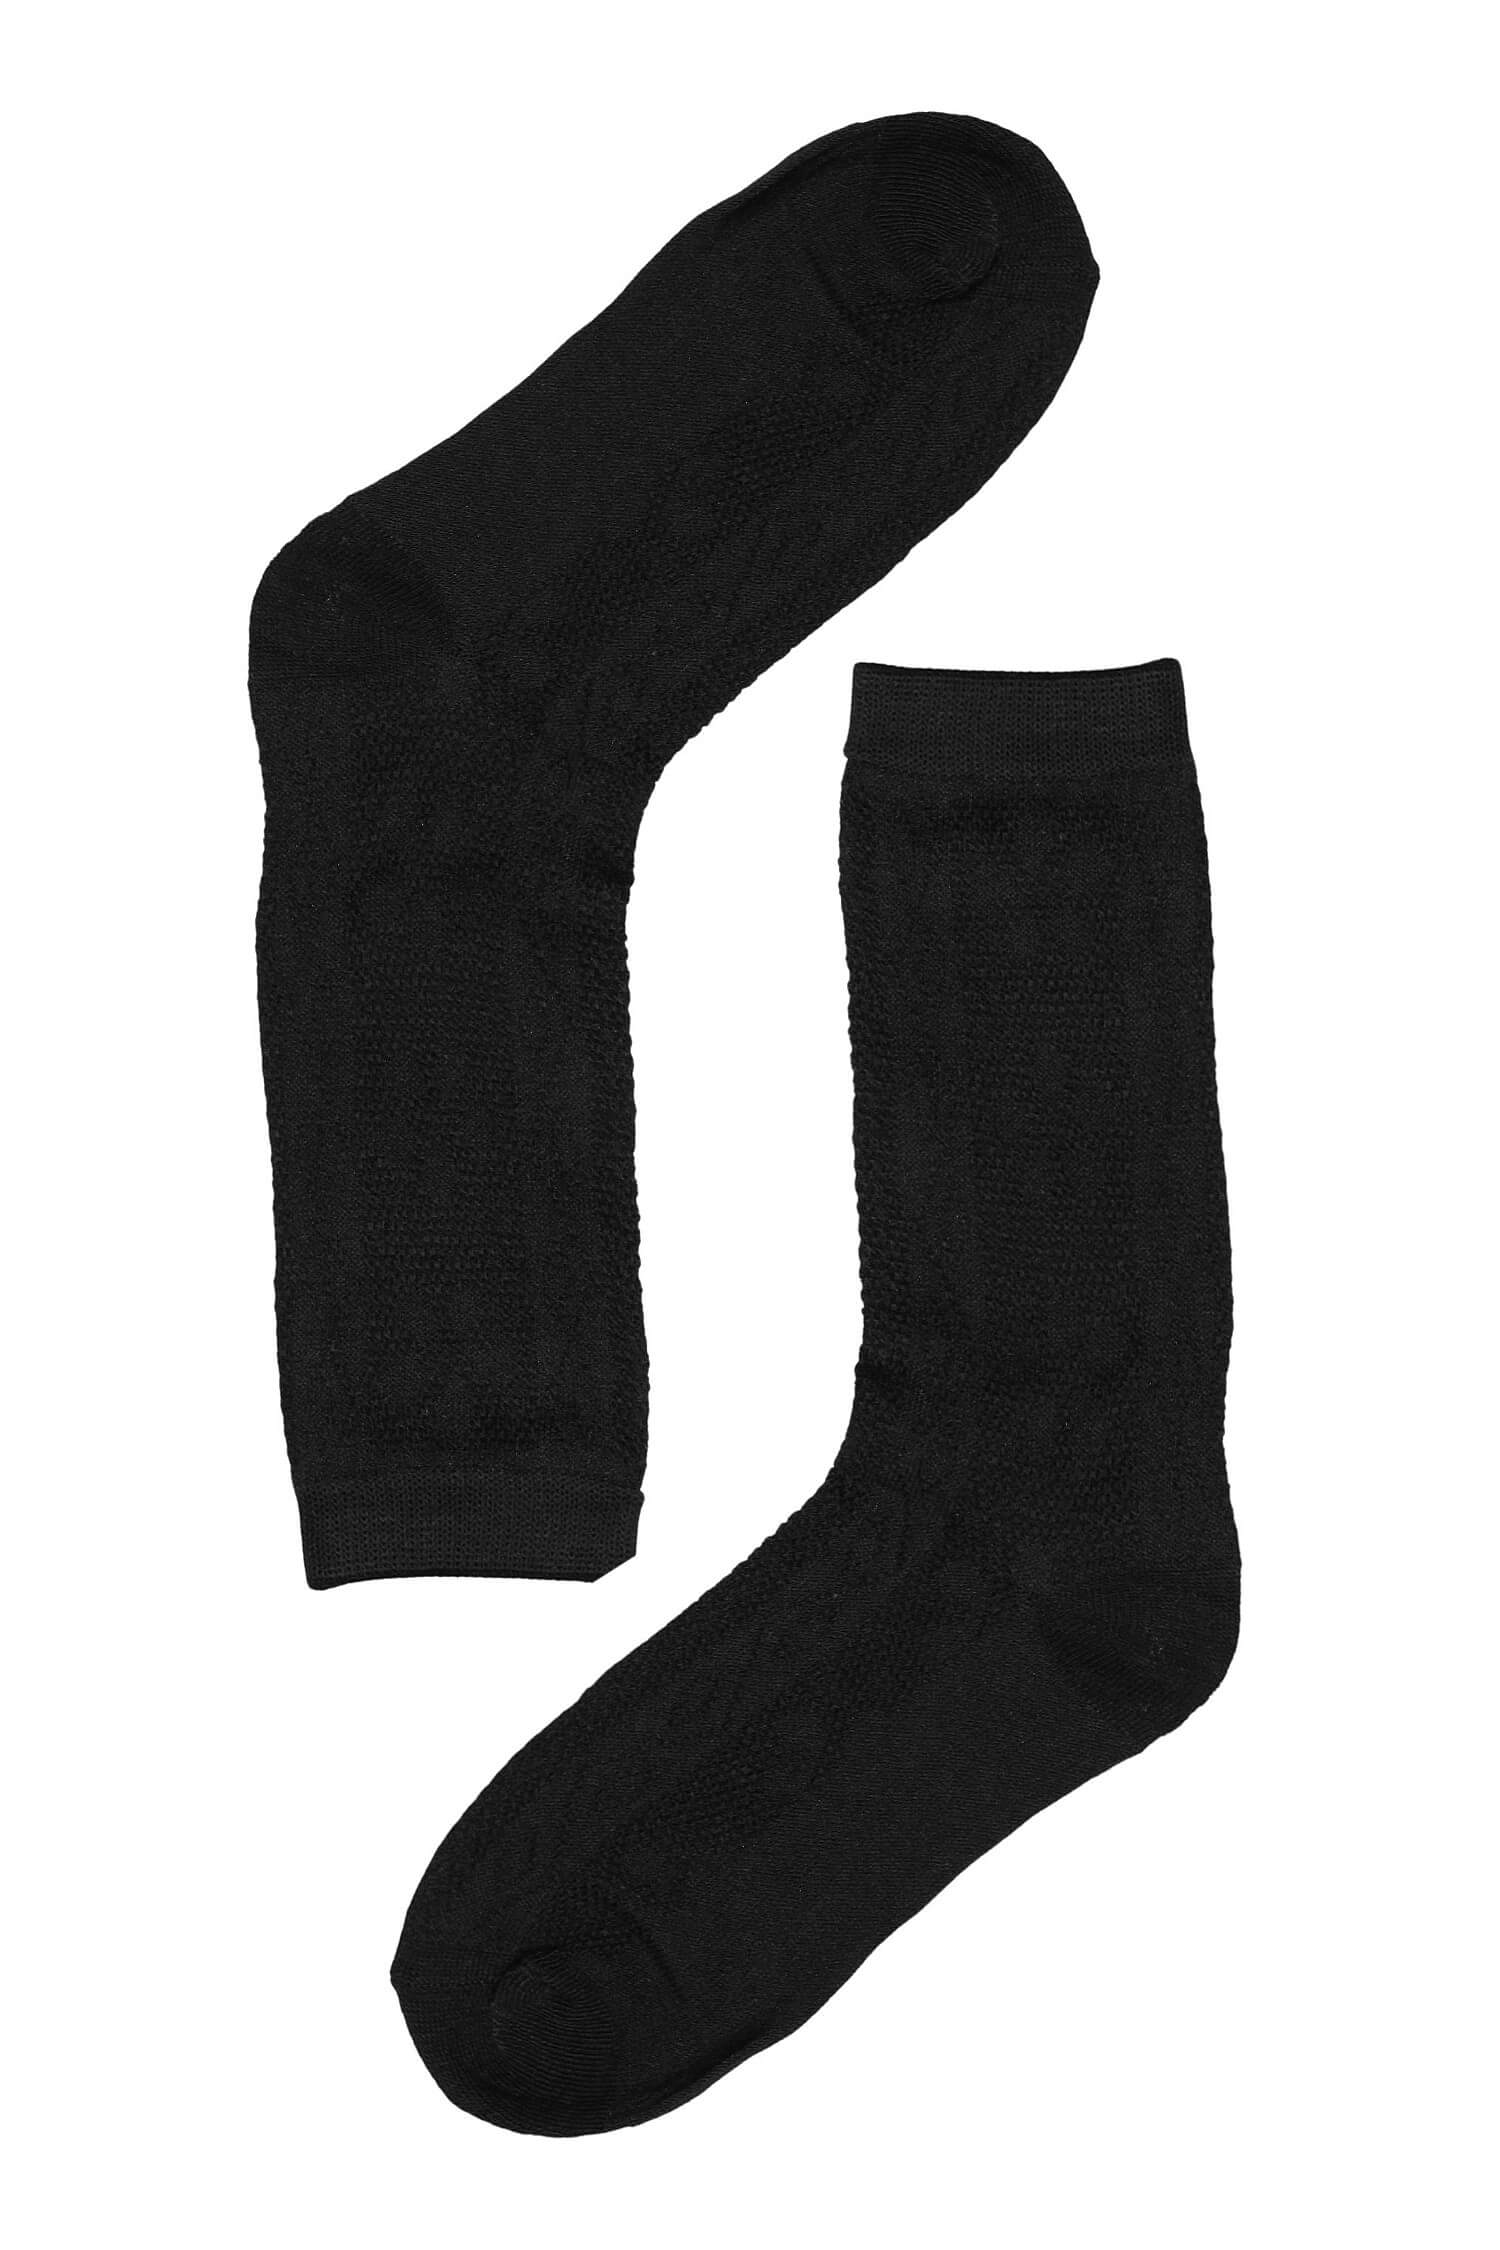 Vzorované dámské ponožky bavlna SK-236 35-38 černá